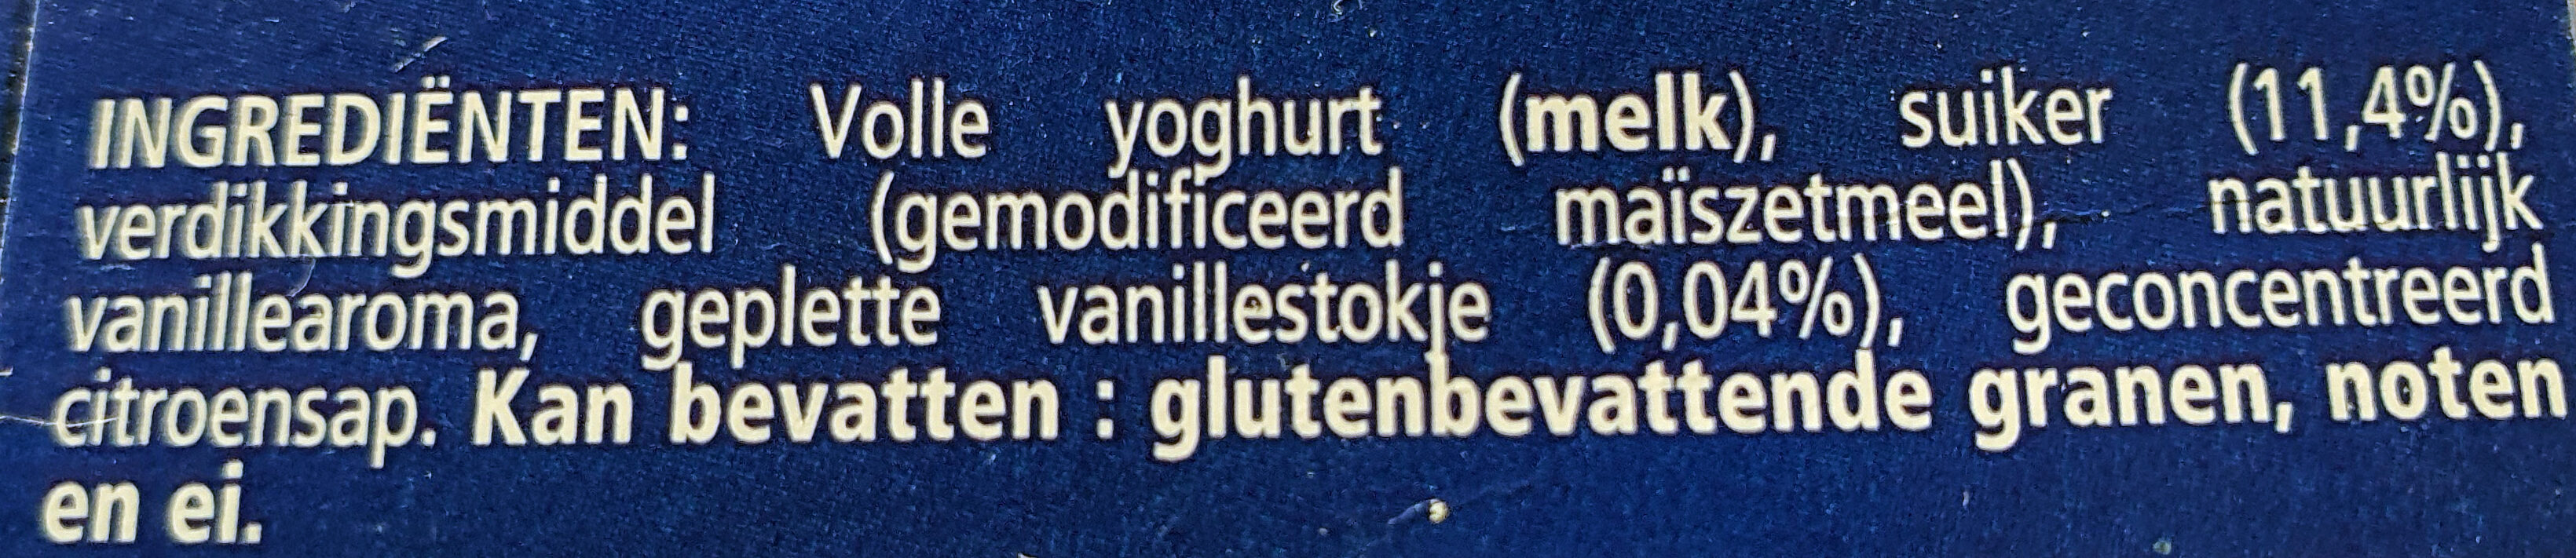 yoghurt op Griekse wijze - Ingrediënten